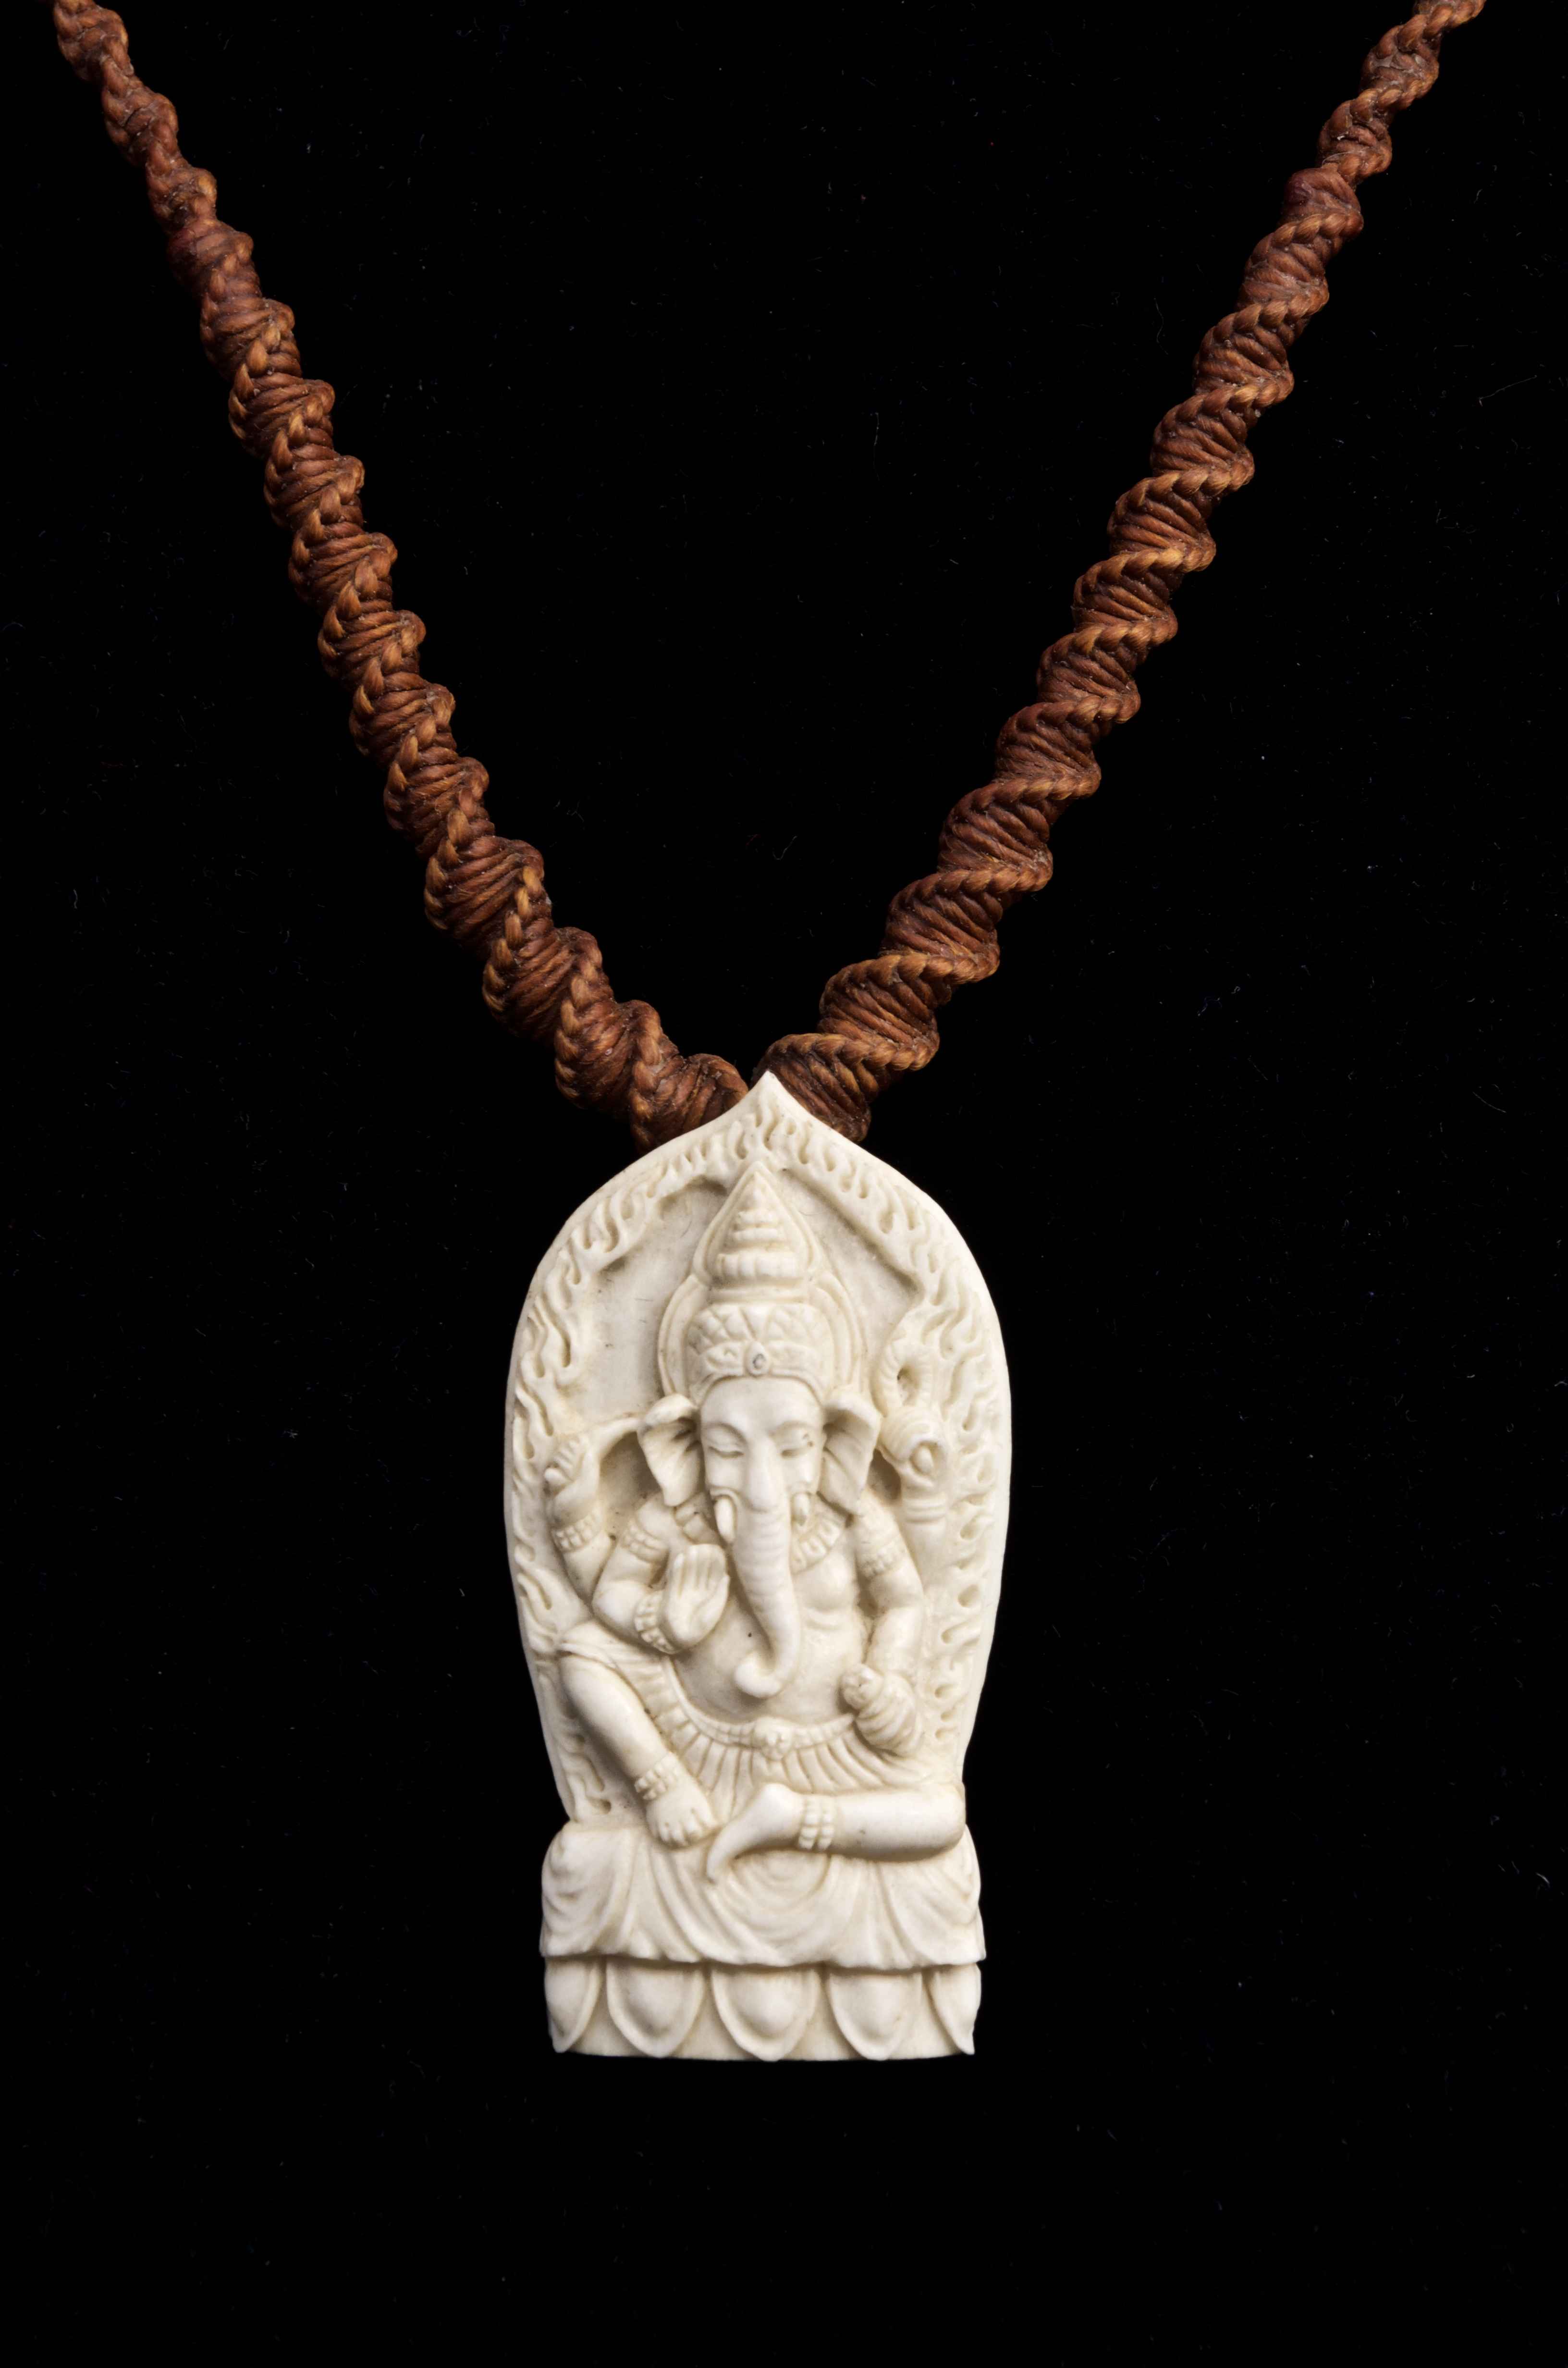 Ganesha Necklace by  Susan Tereba - Masterpiece Online